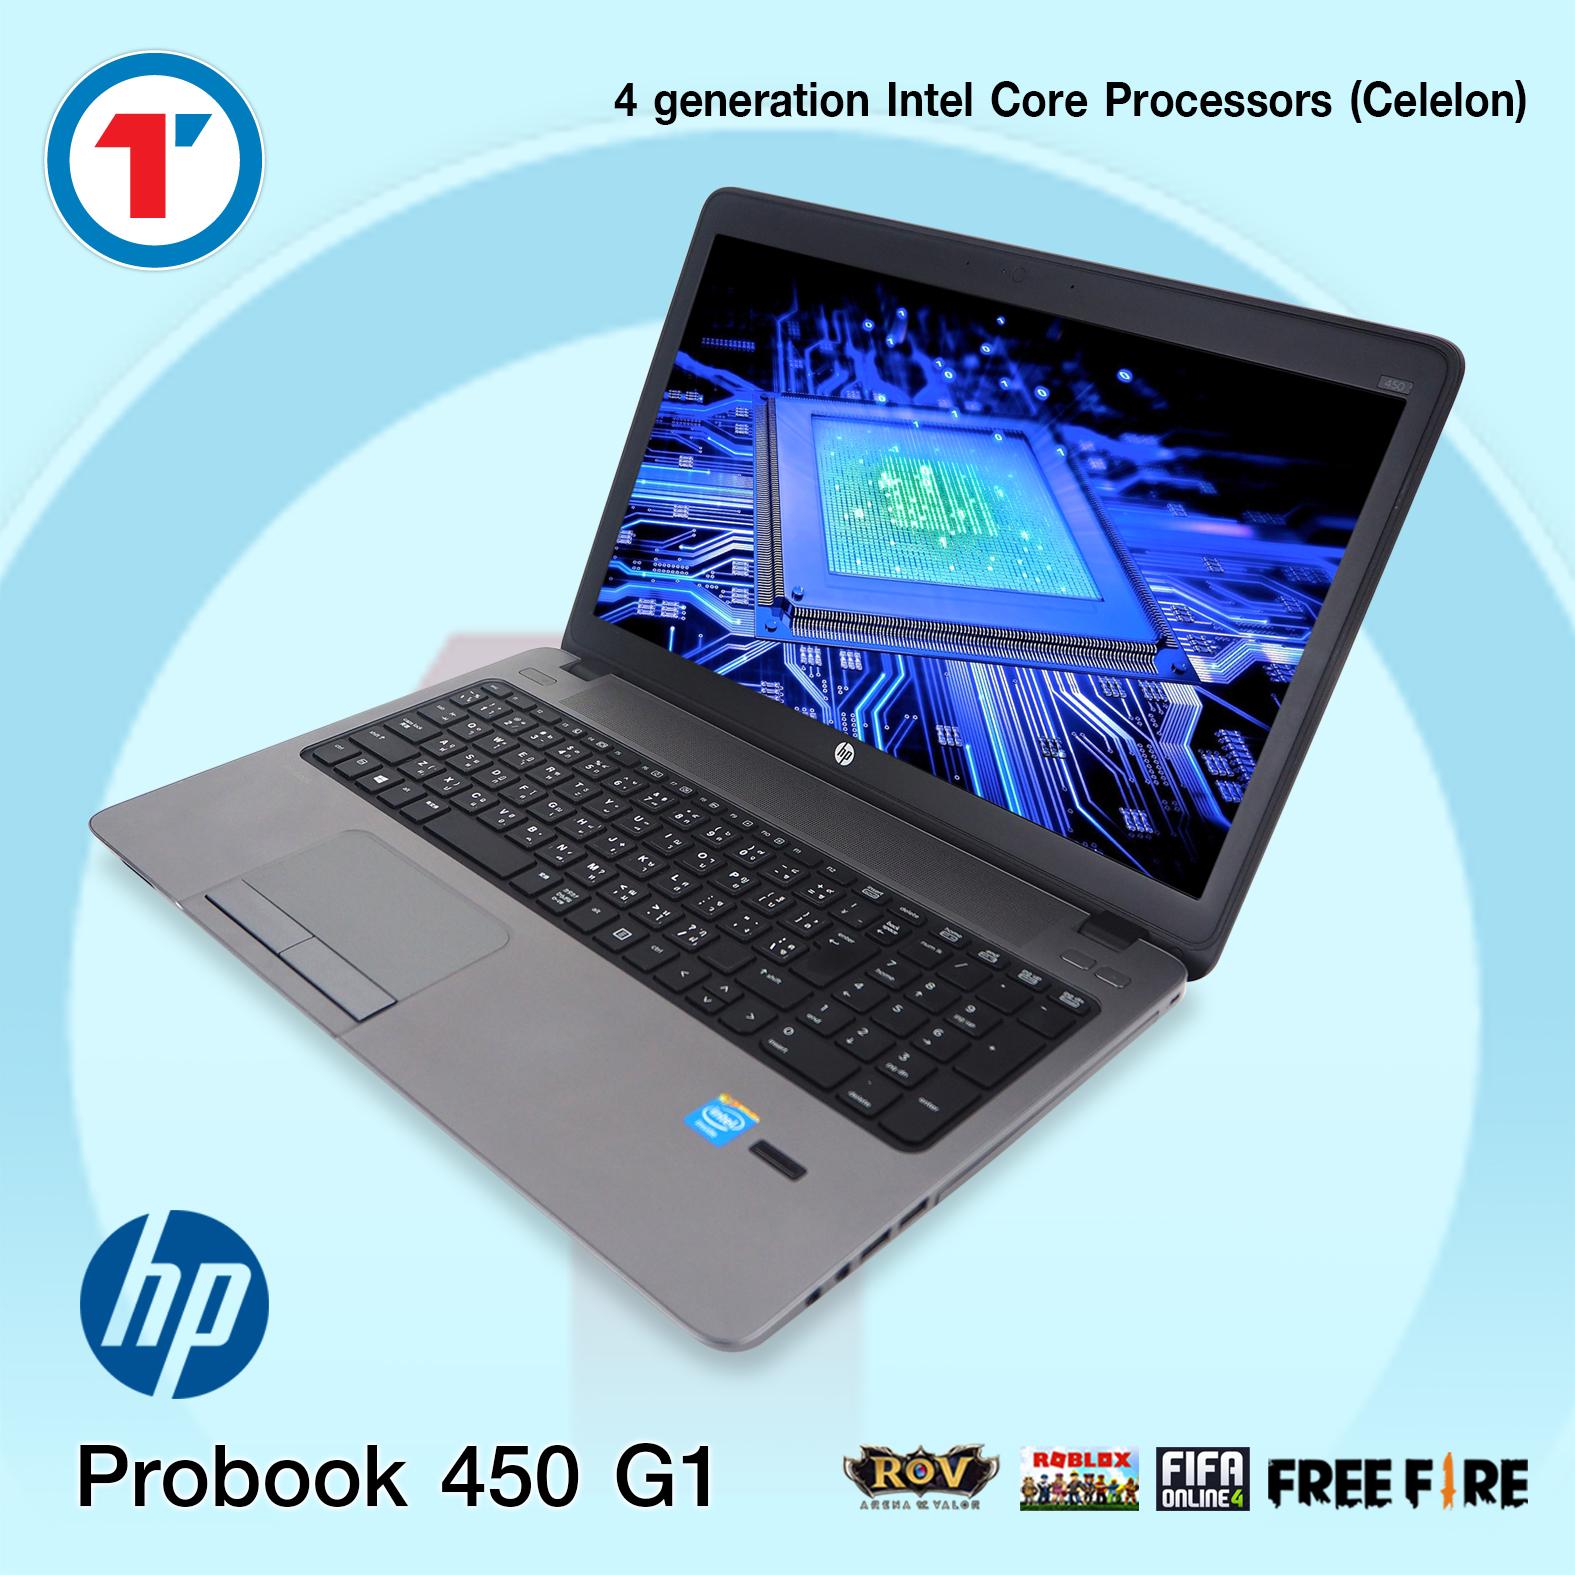 โนตบค Hp Probook 450g1 Ram 4gb Hdd 320gb สภาพด มประกน - how to zoom out in roblox on laptop